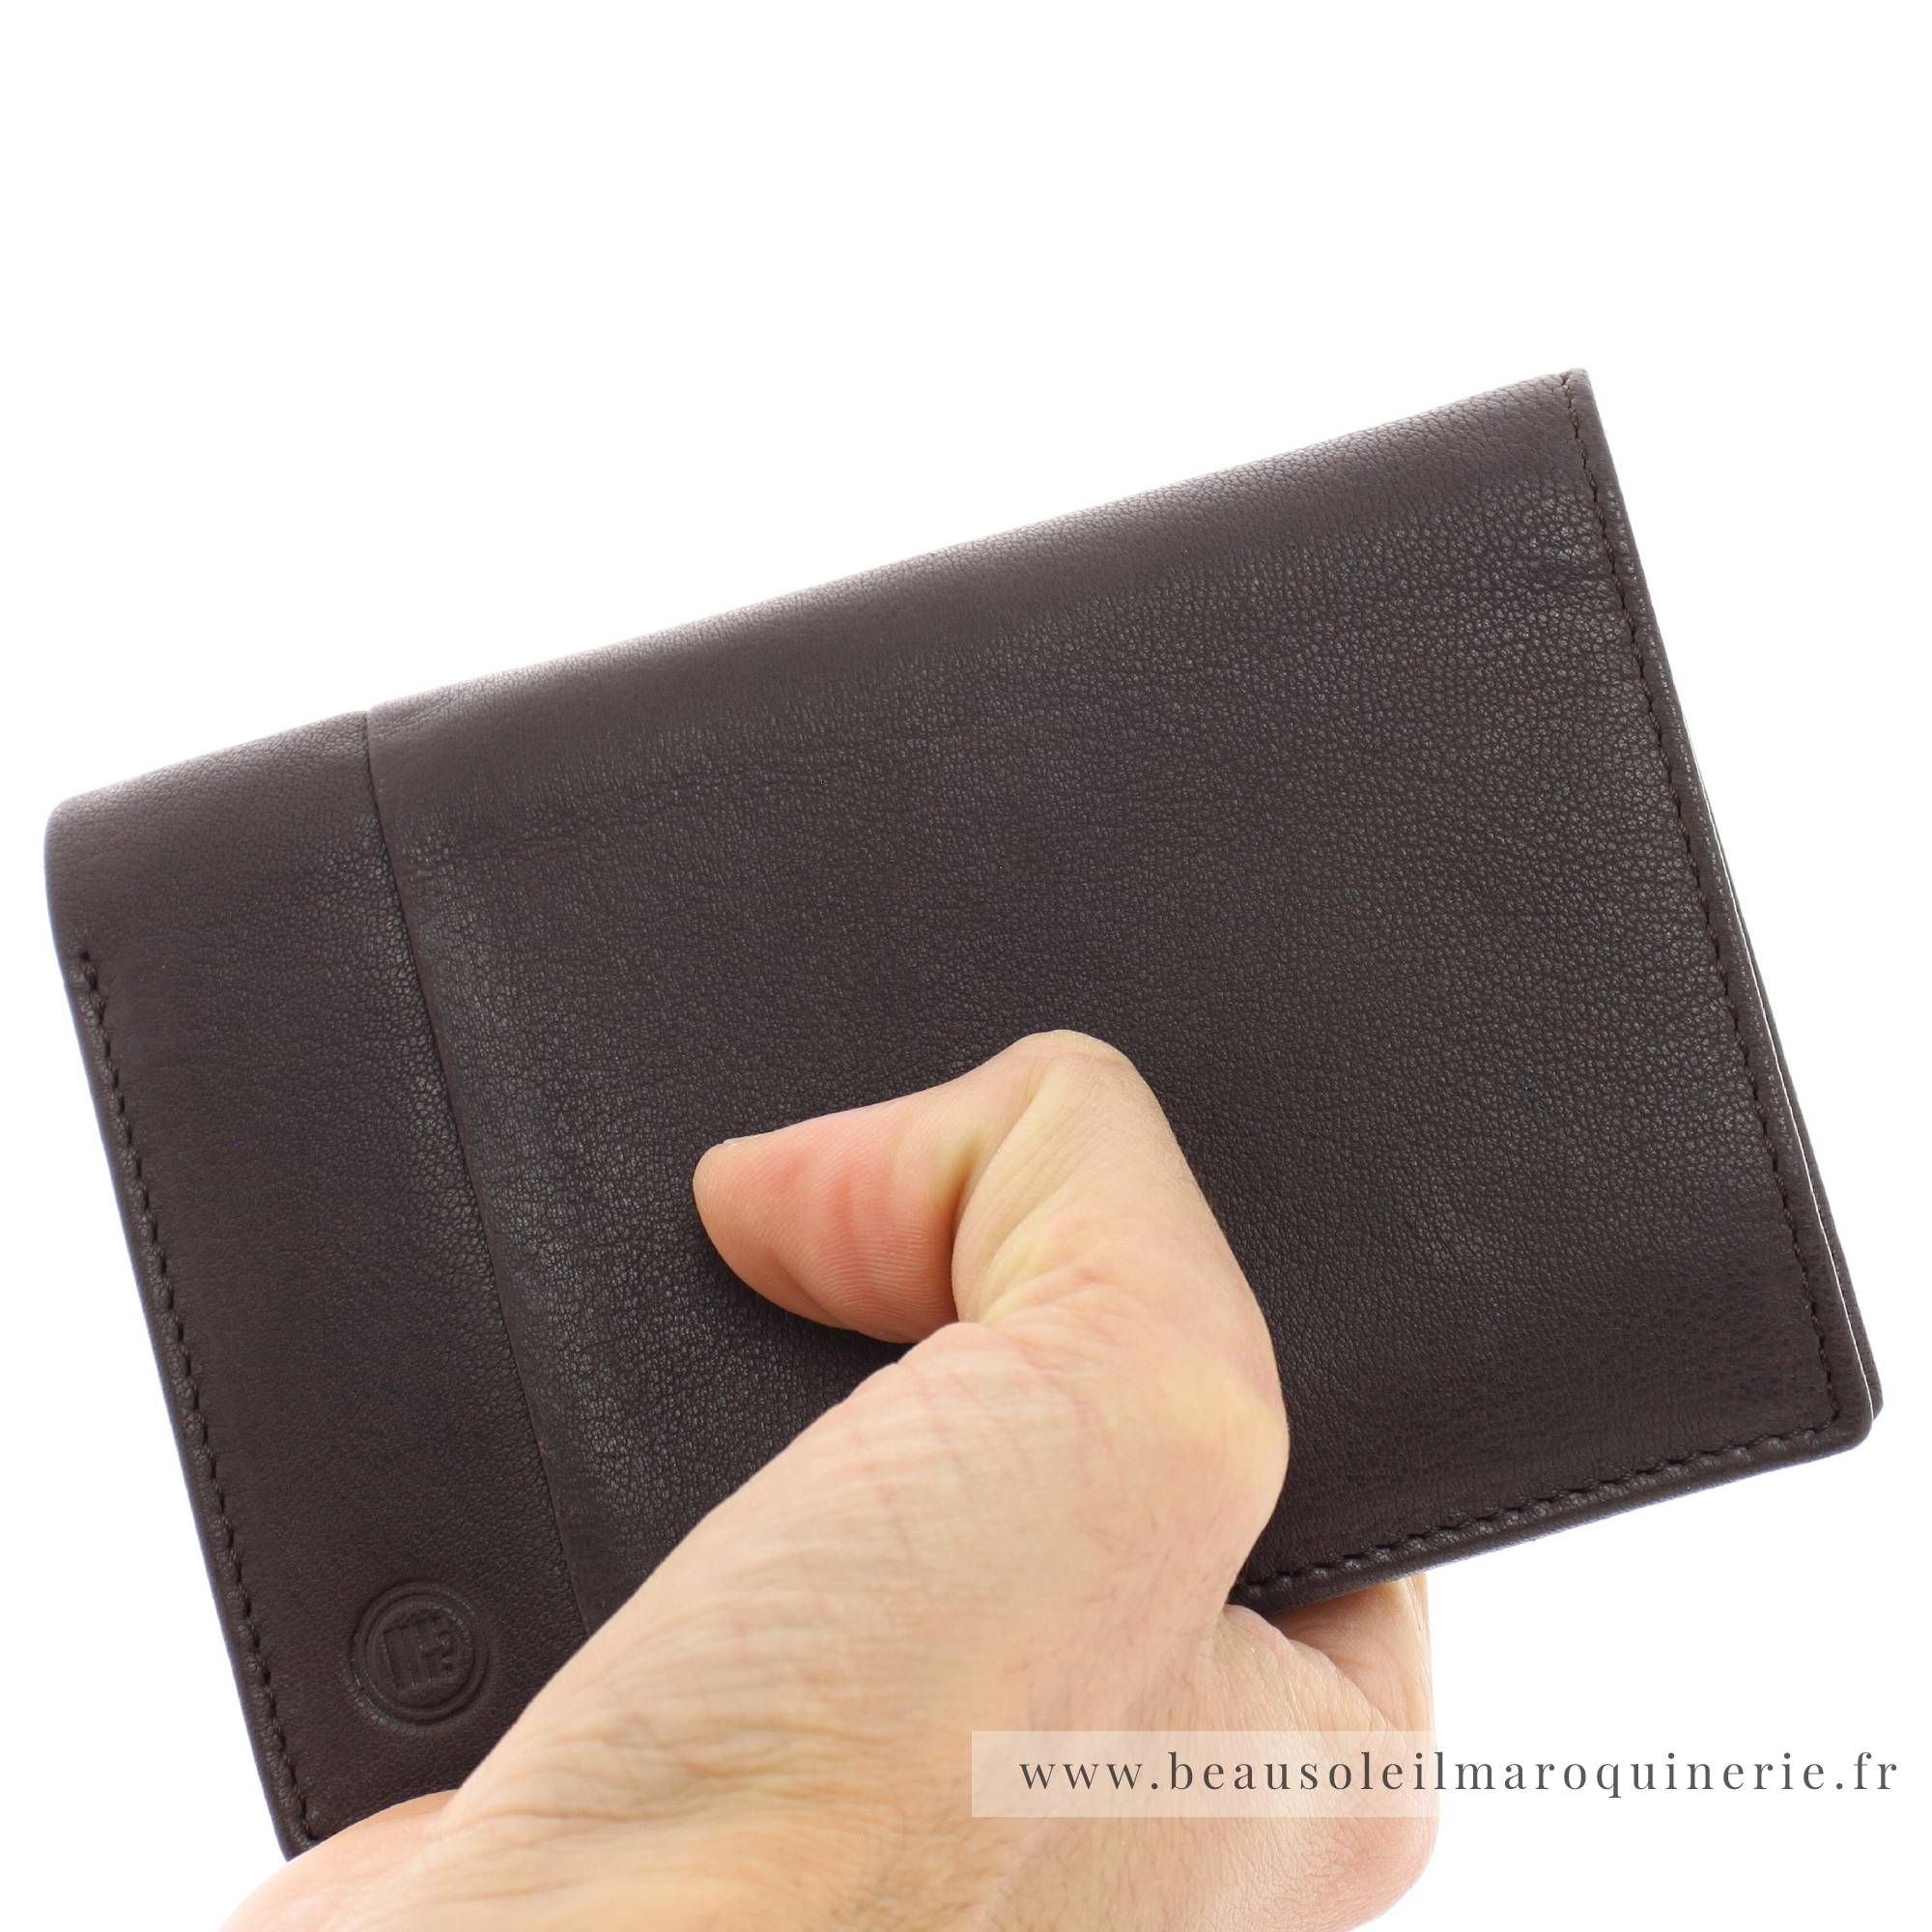 Portefeuille porte-cartes Serge Blanco en cuir ligne Anchorage, référence ANC21019 180 chocolat porté main